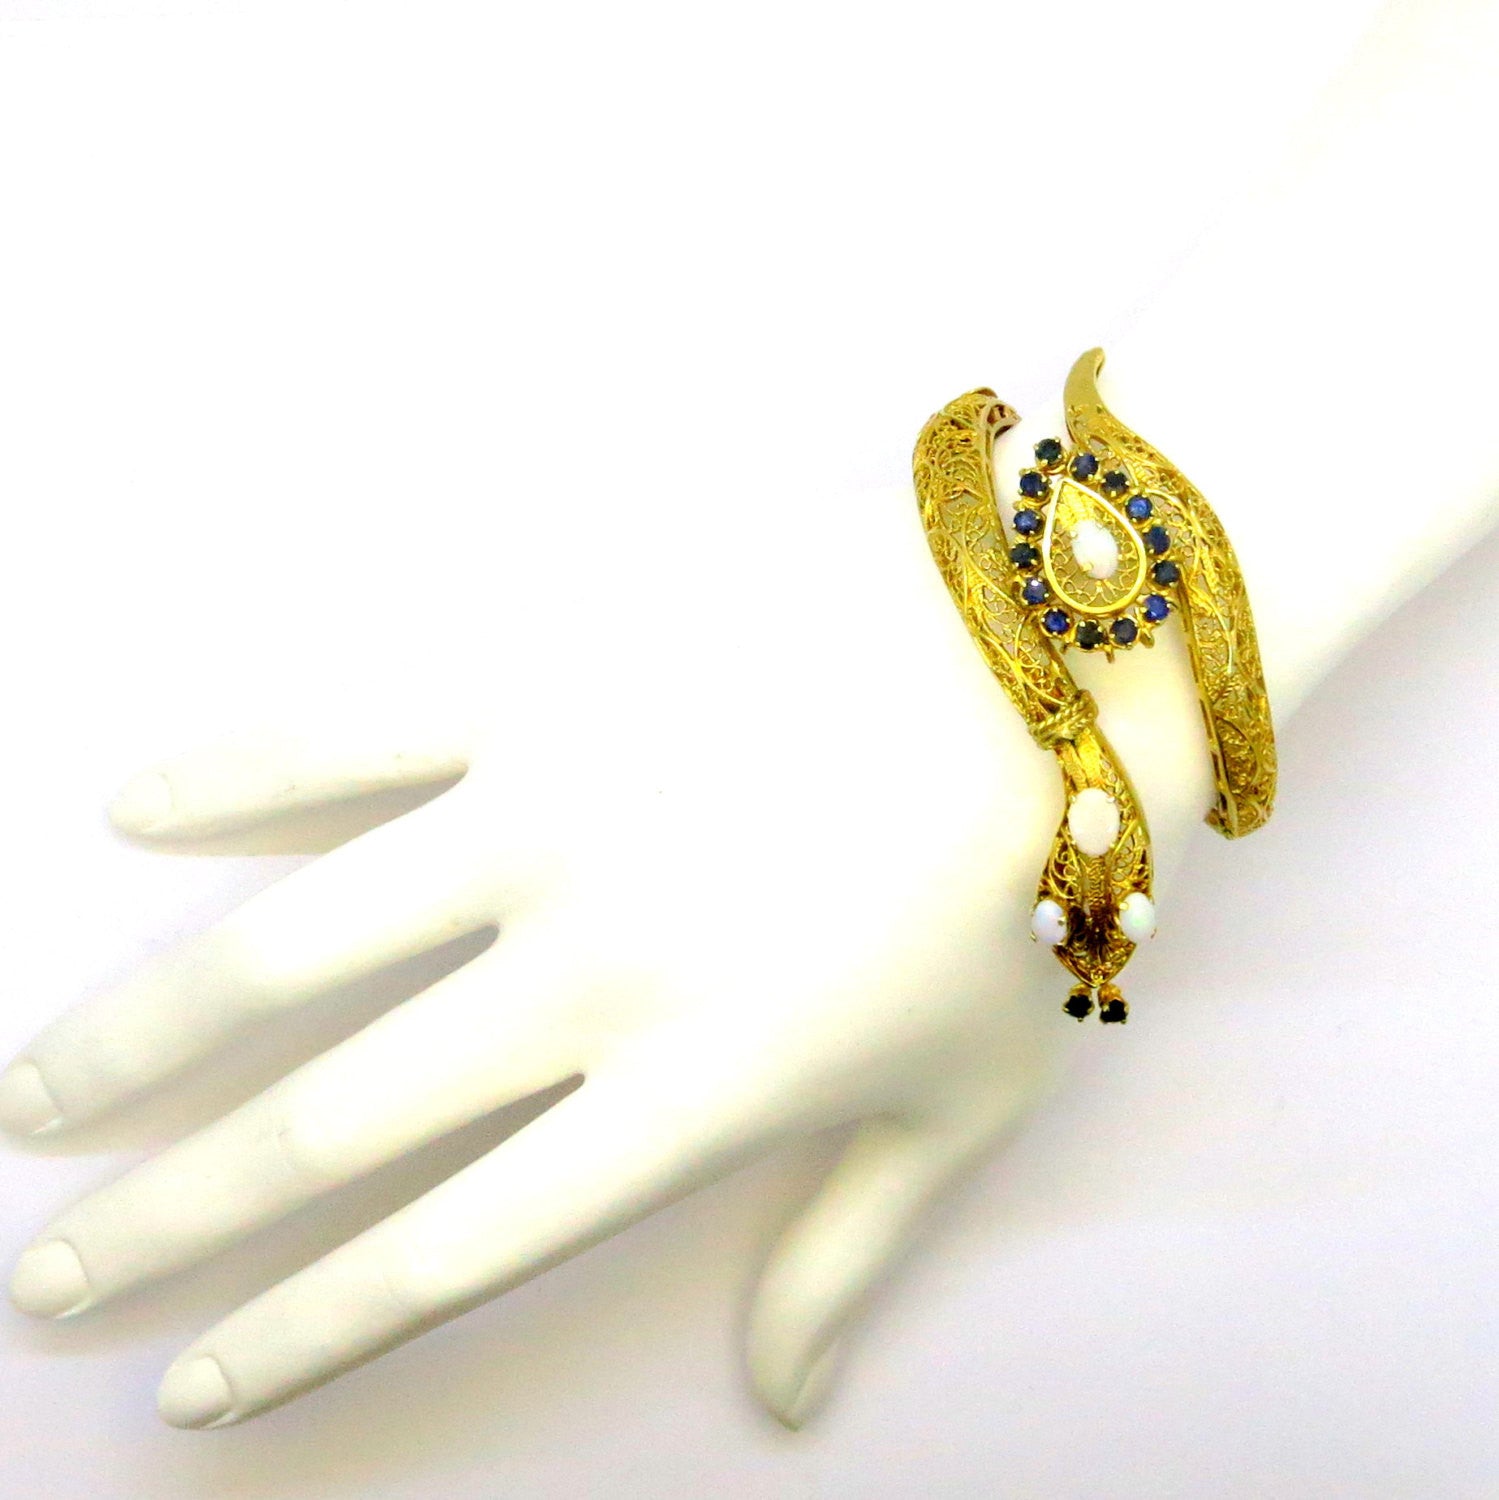 Vintage Snake Bangle Bracelet, Opal & Sapphire 14K Gold, Unique Filigree Design